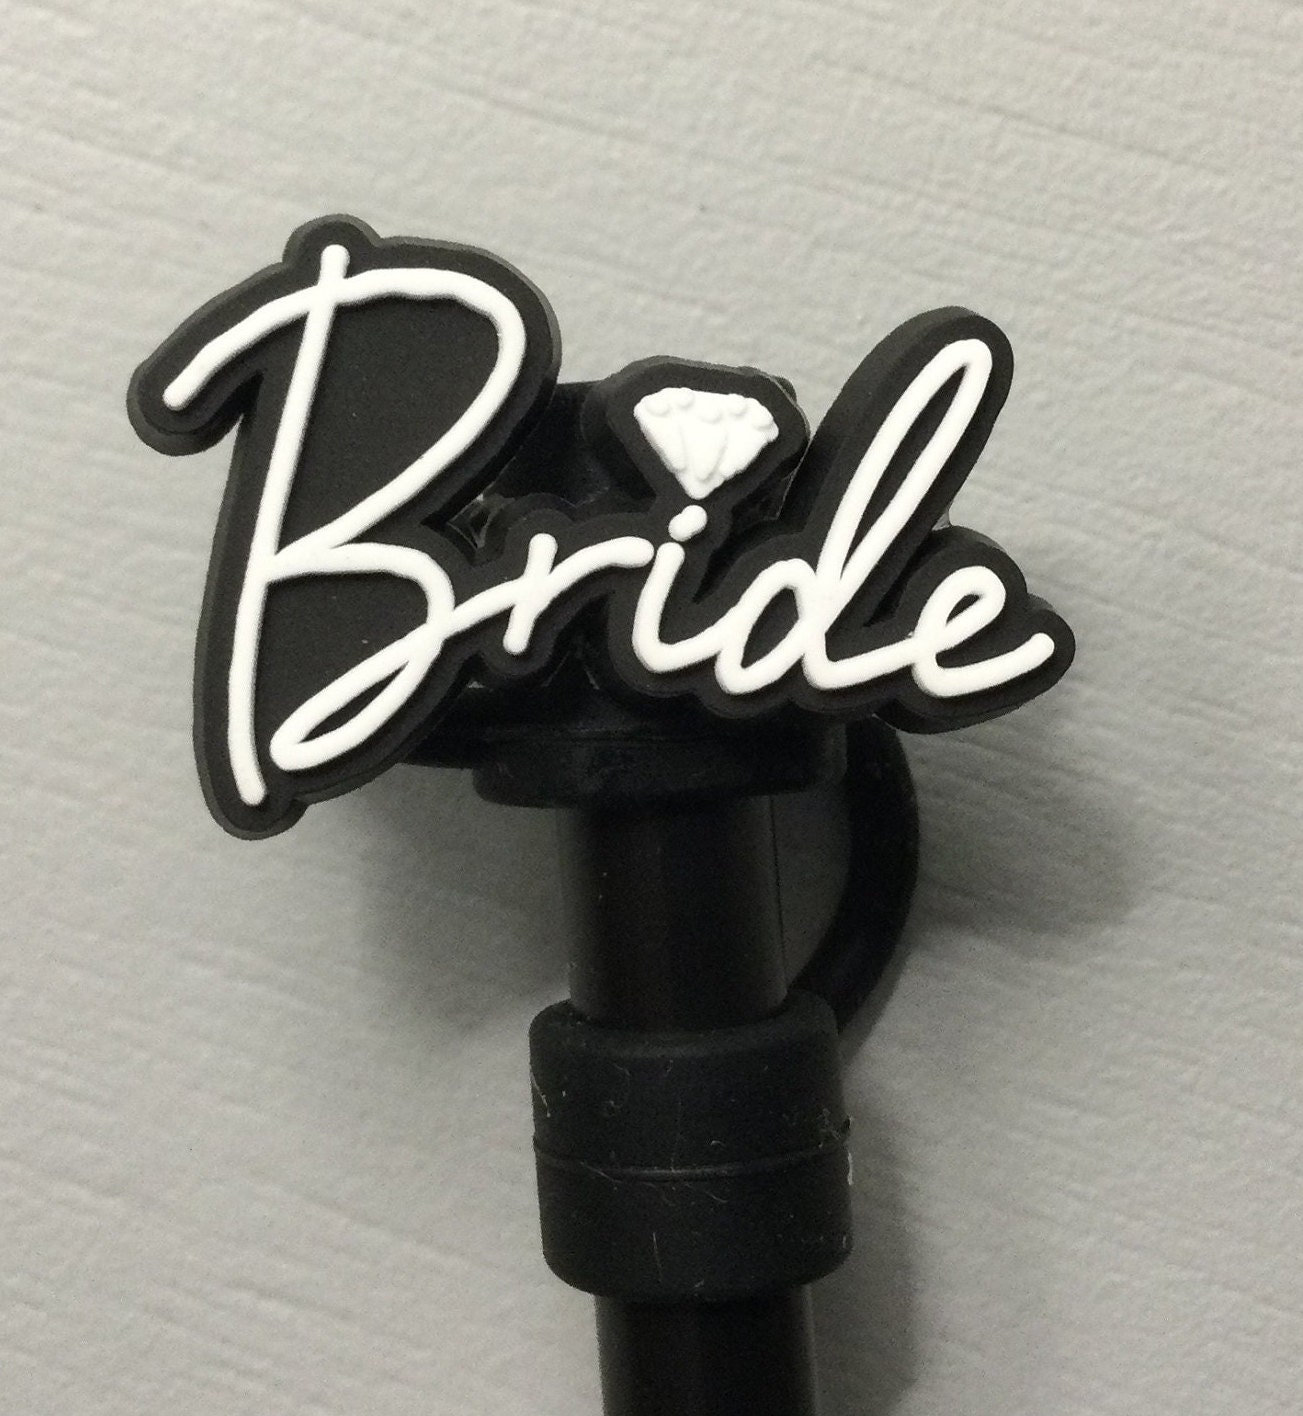 Bride Crazy Straw – Busy & Company